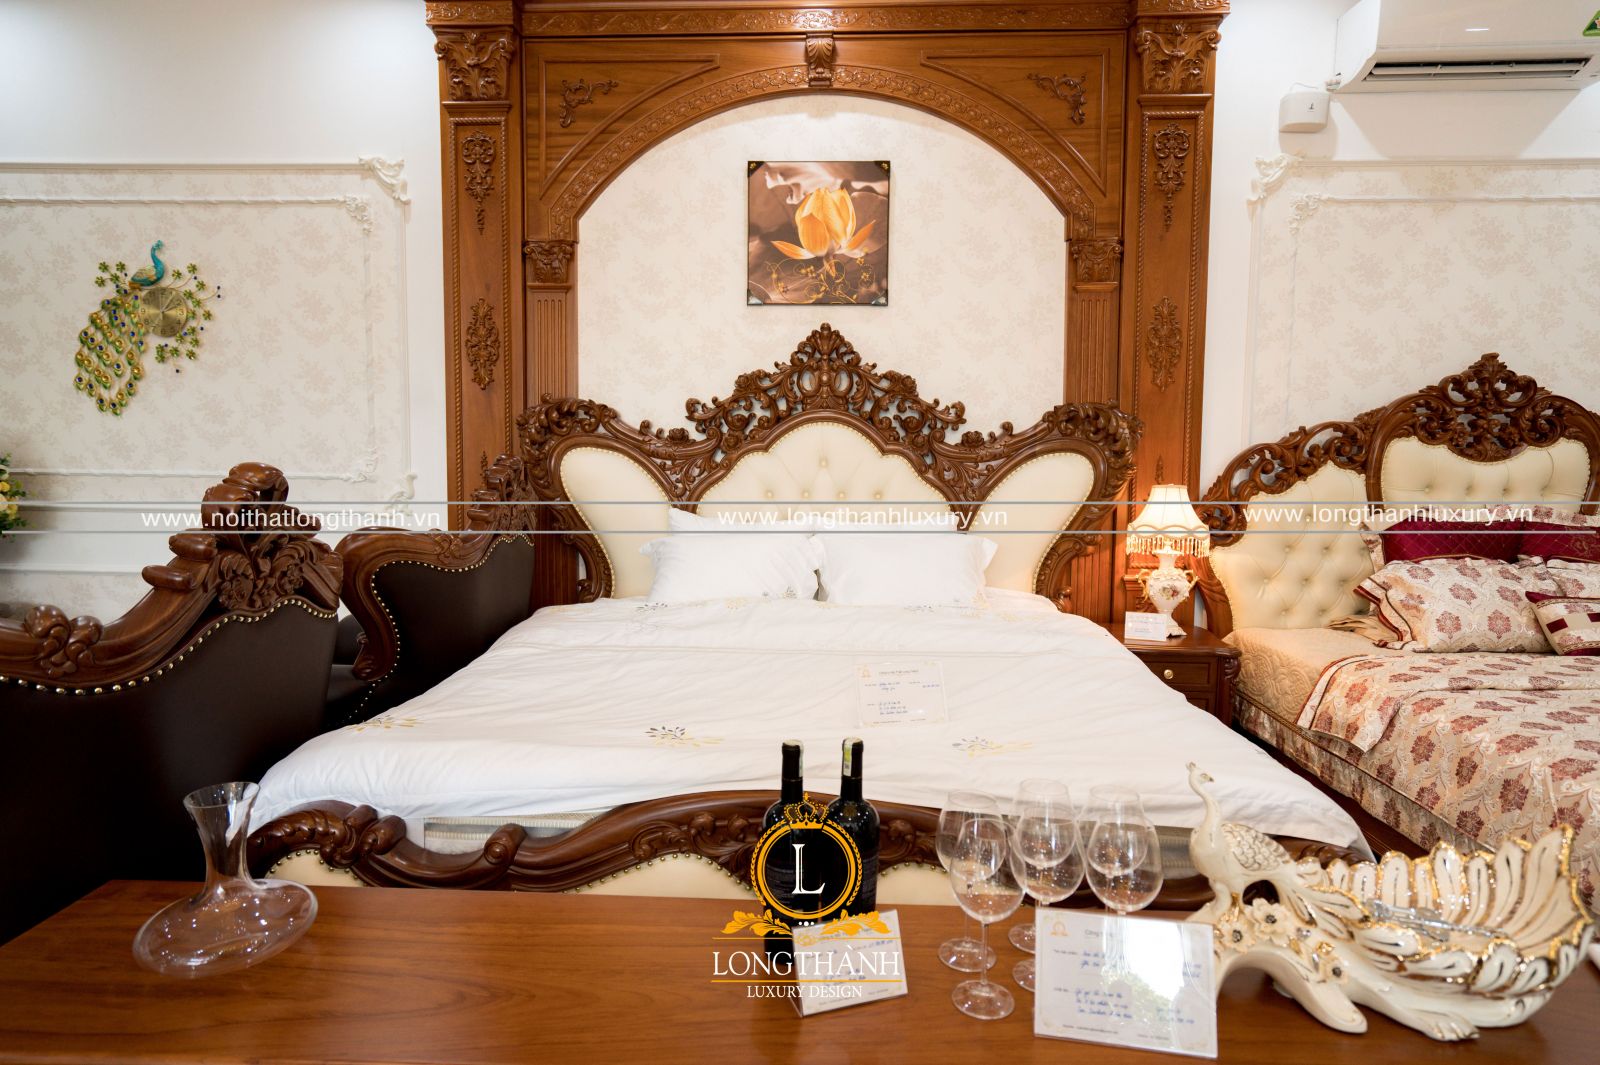 Những chiếc giường ngủ tân cổ điển cũng được trưng bày tại cửa hàng đại lý cho khách hàng tham quan trải nghiệm